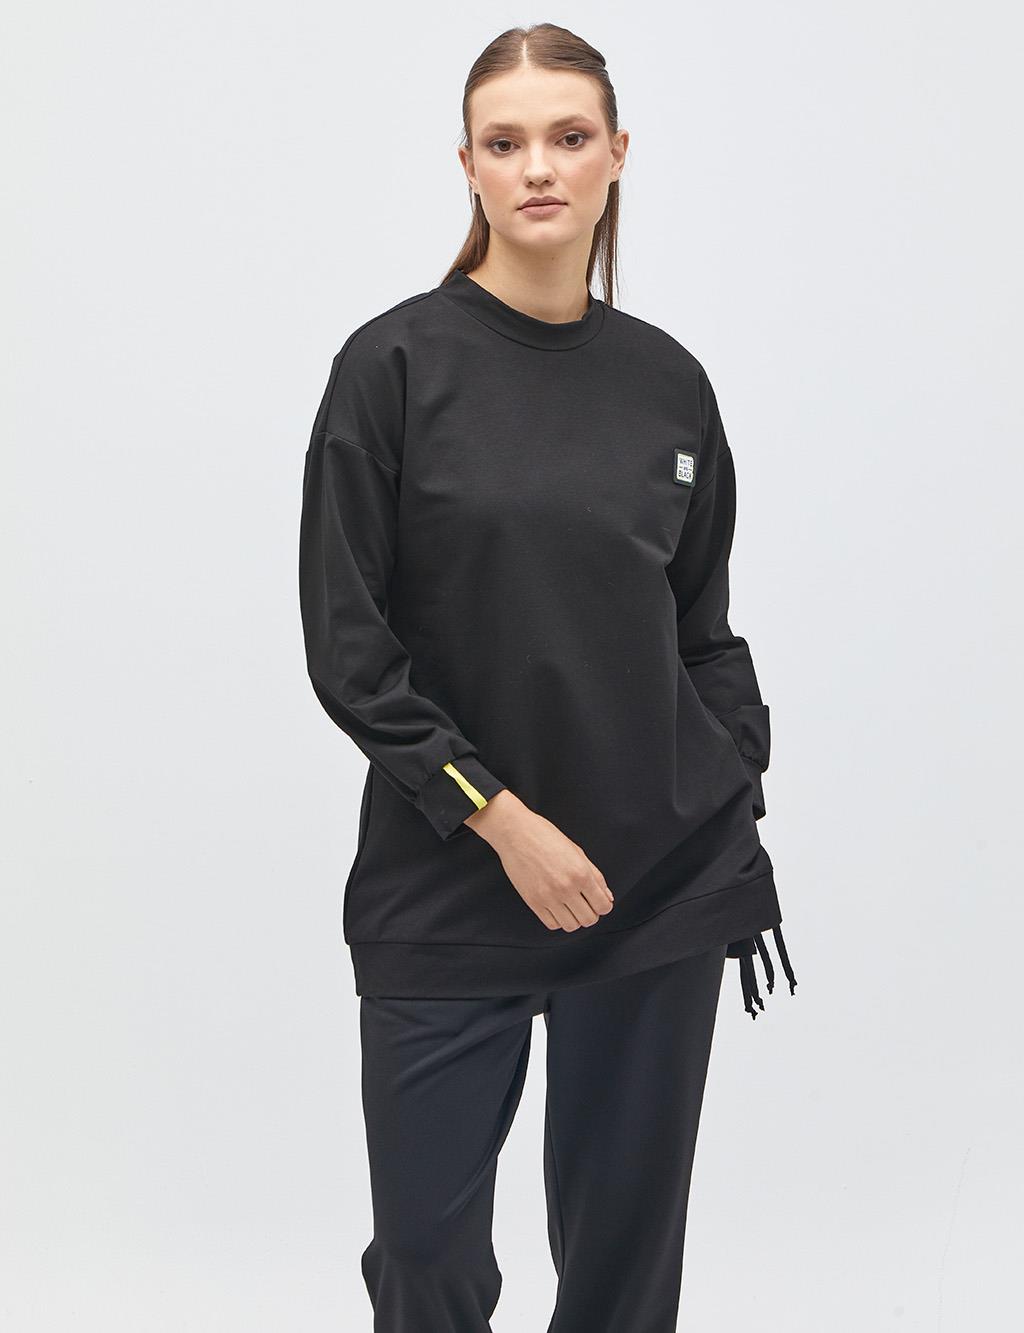 Low Sleeve Sweatshirt Black